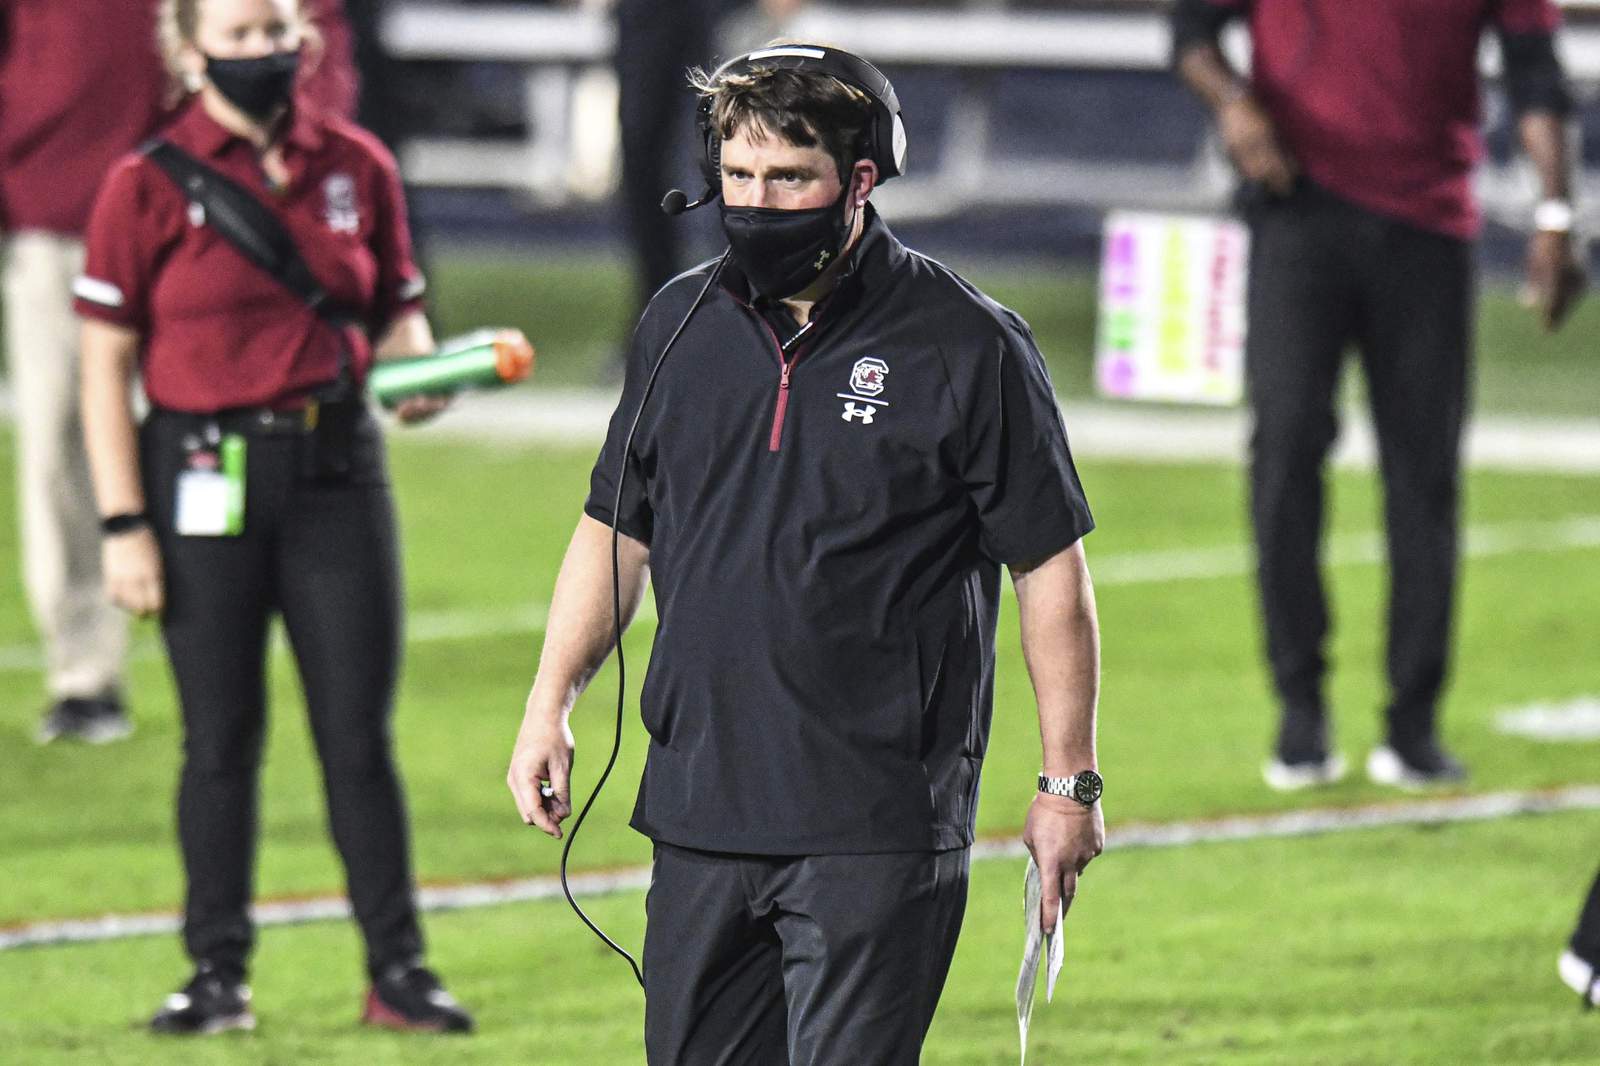 South Carolina fires football coach Will Muschamp